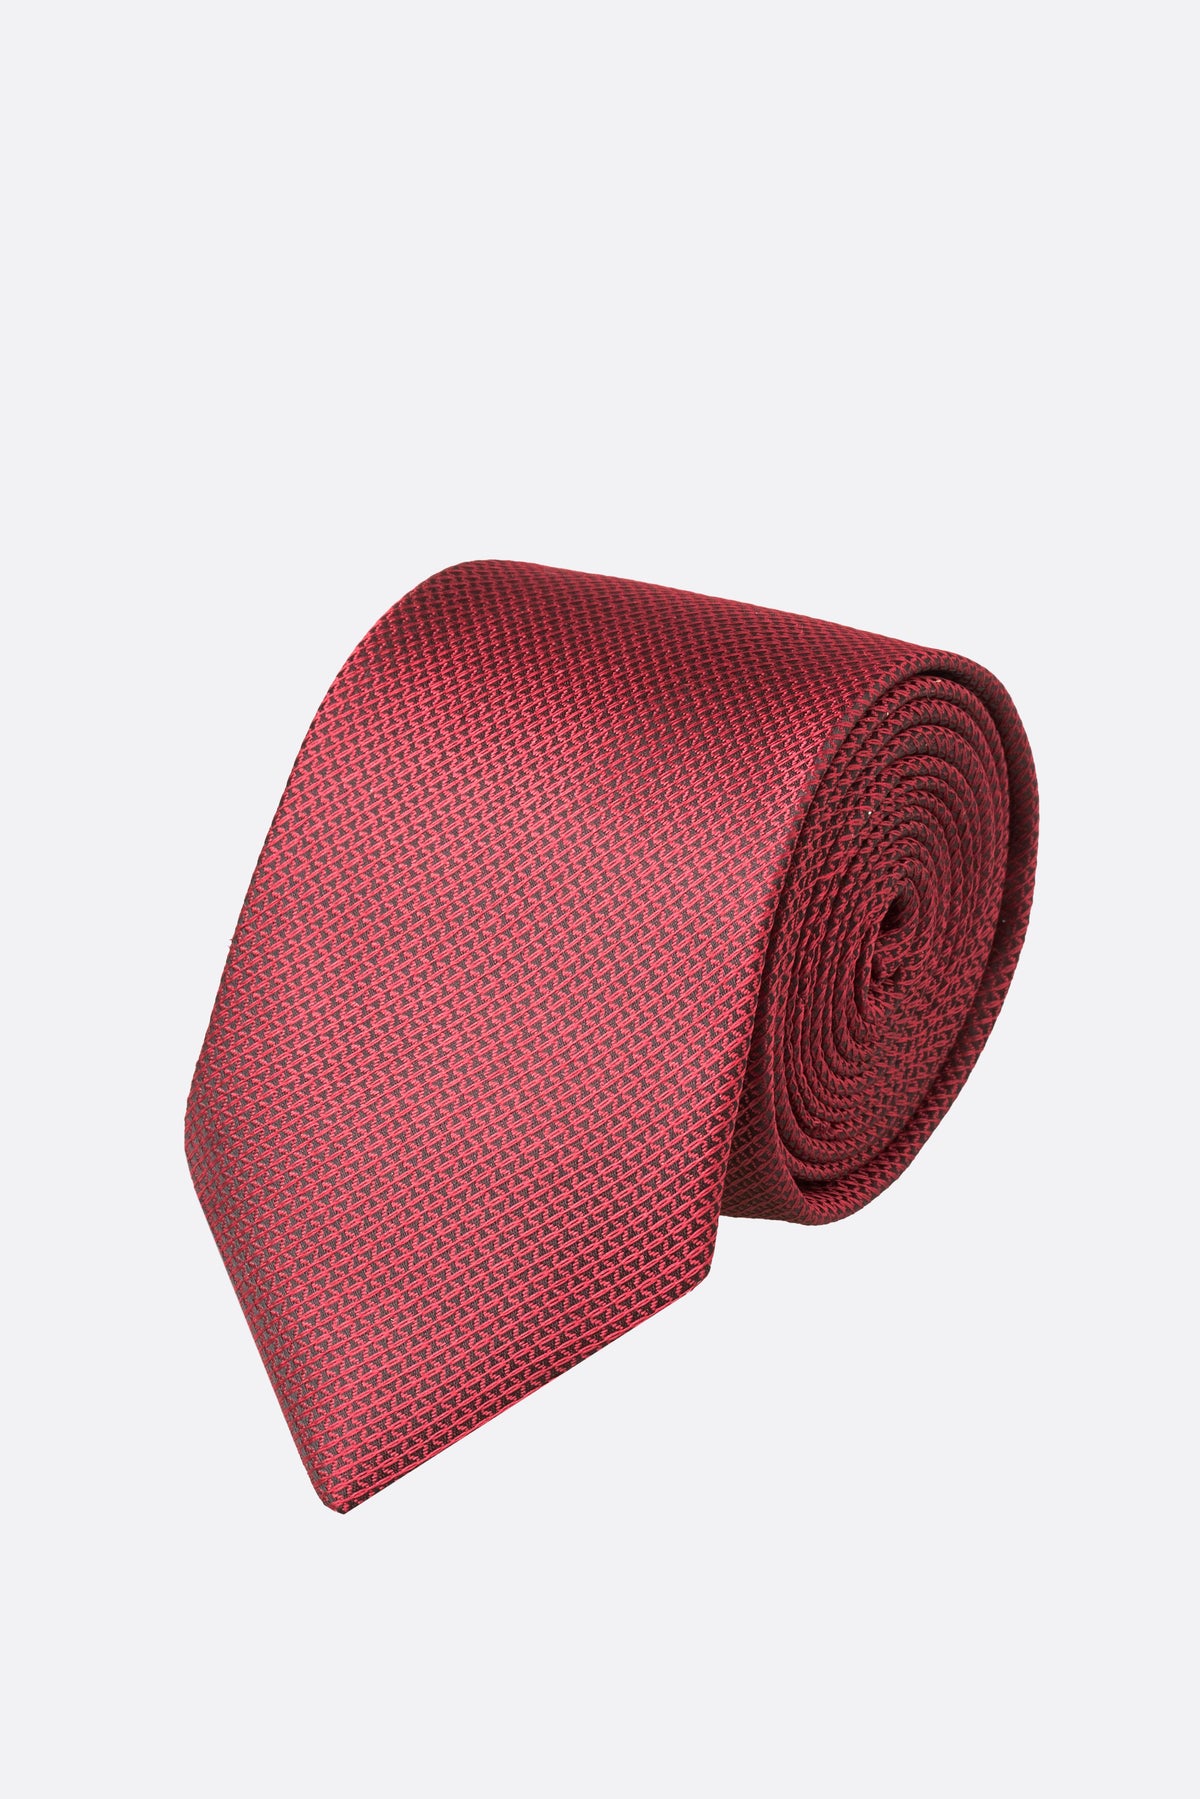 Santoro Milan Scarlet Tie